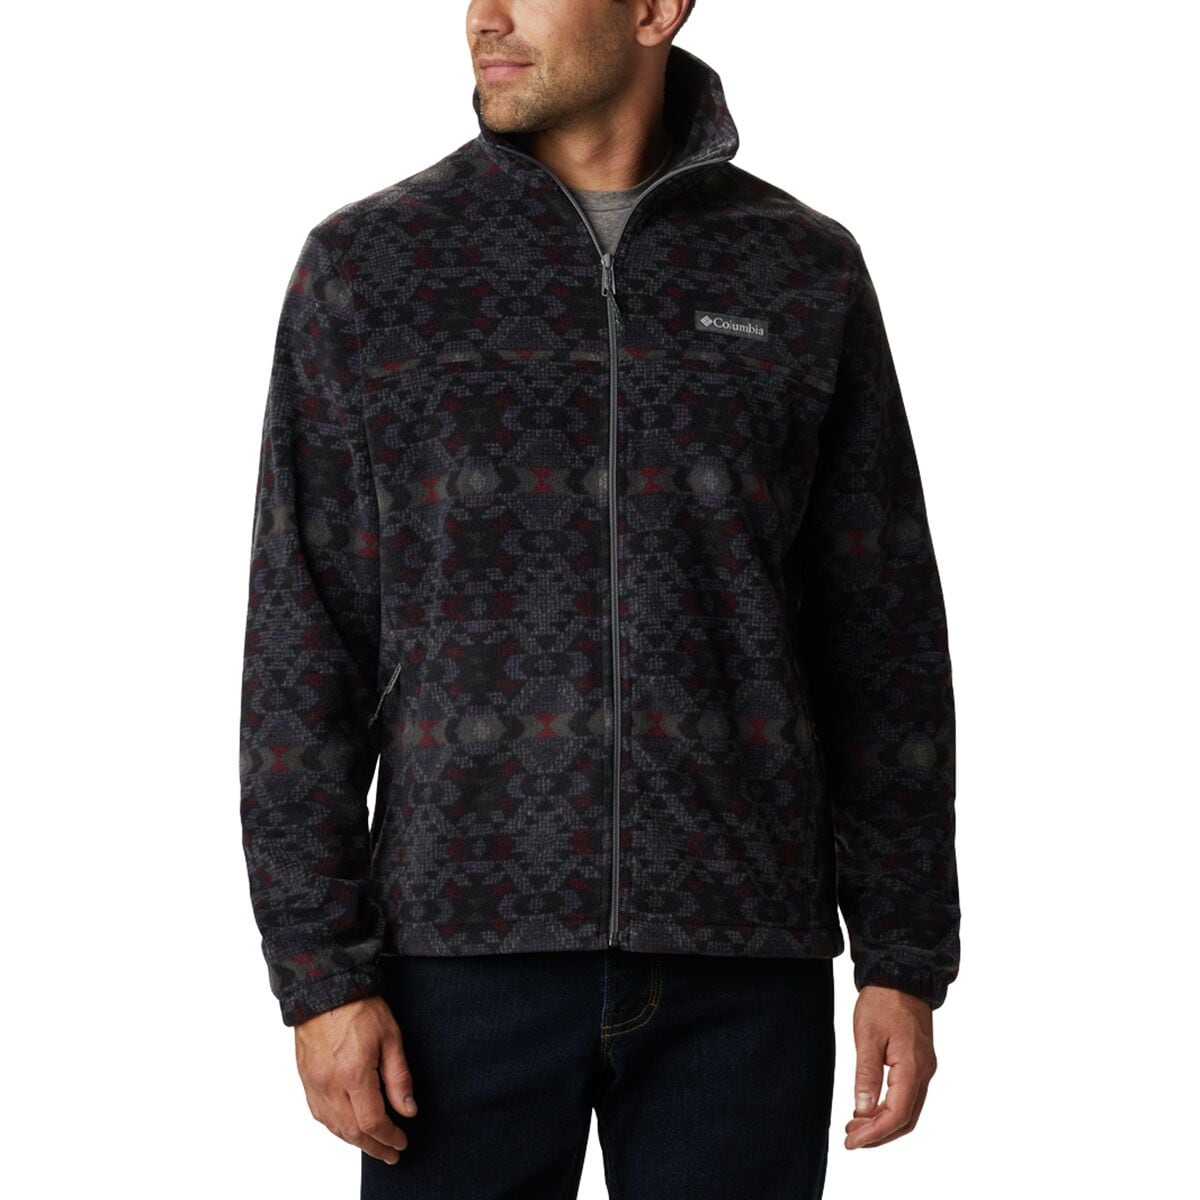 Steens Mountain Print Fleece Jacket - Men